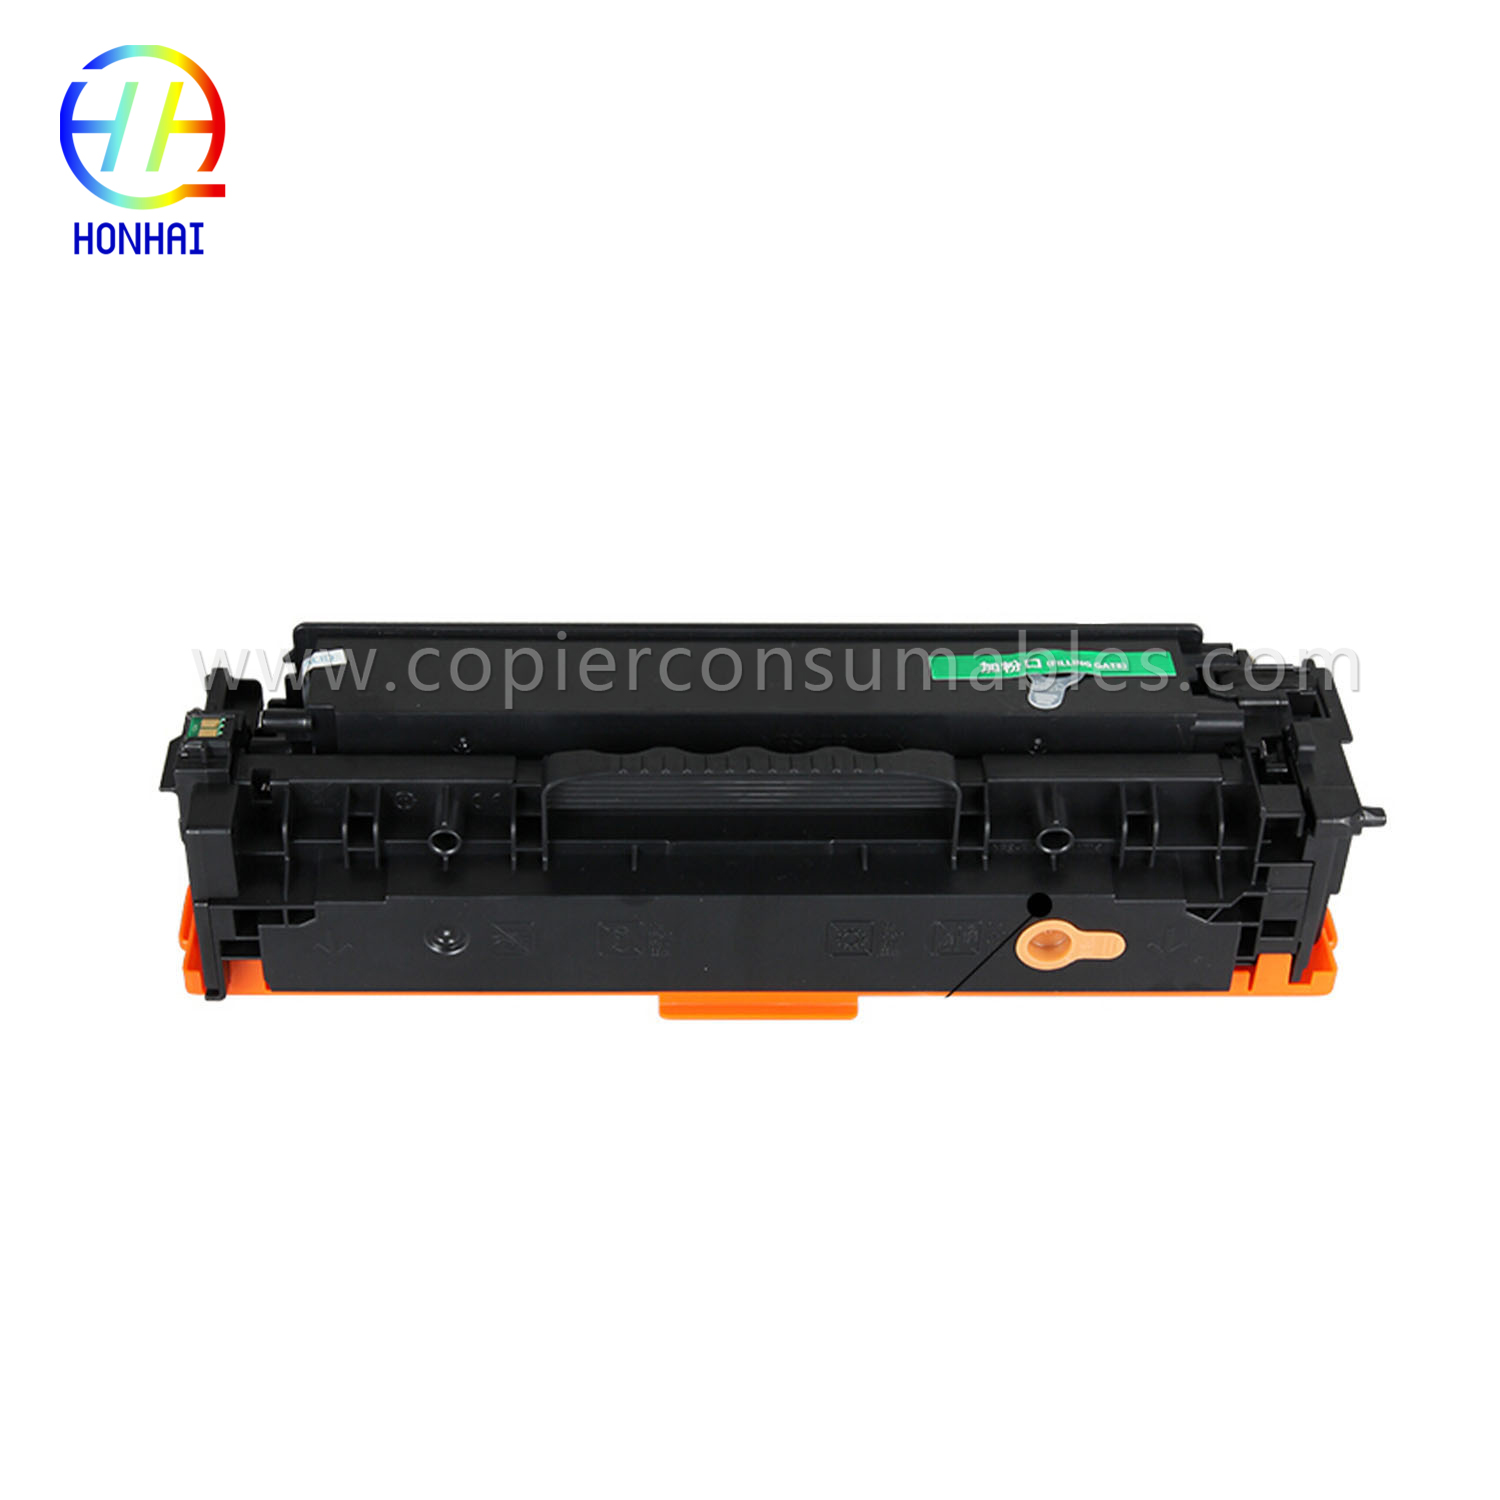 Тонер-картридж для HP Laserjet PRO 400 Color Mfp M451nw M451DN M451dw PRO 300 Color Mfp M375nw (CE410A) 拷贝